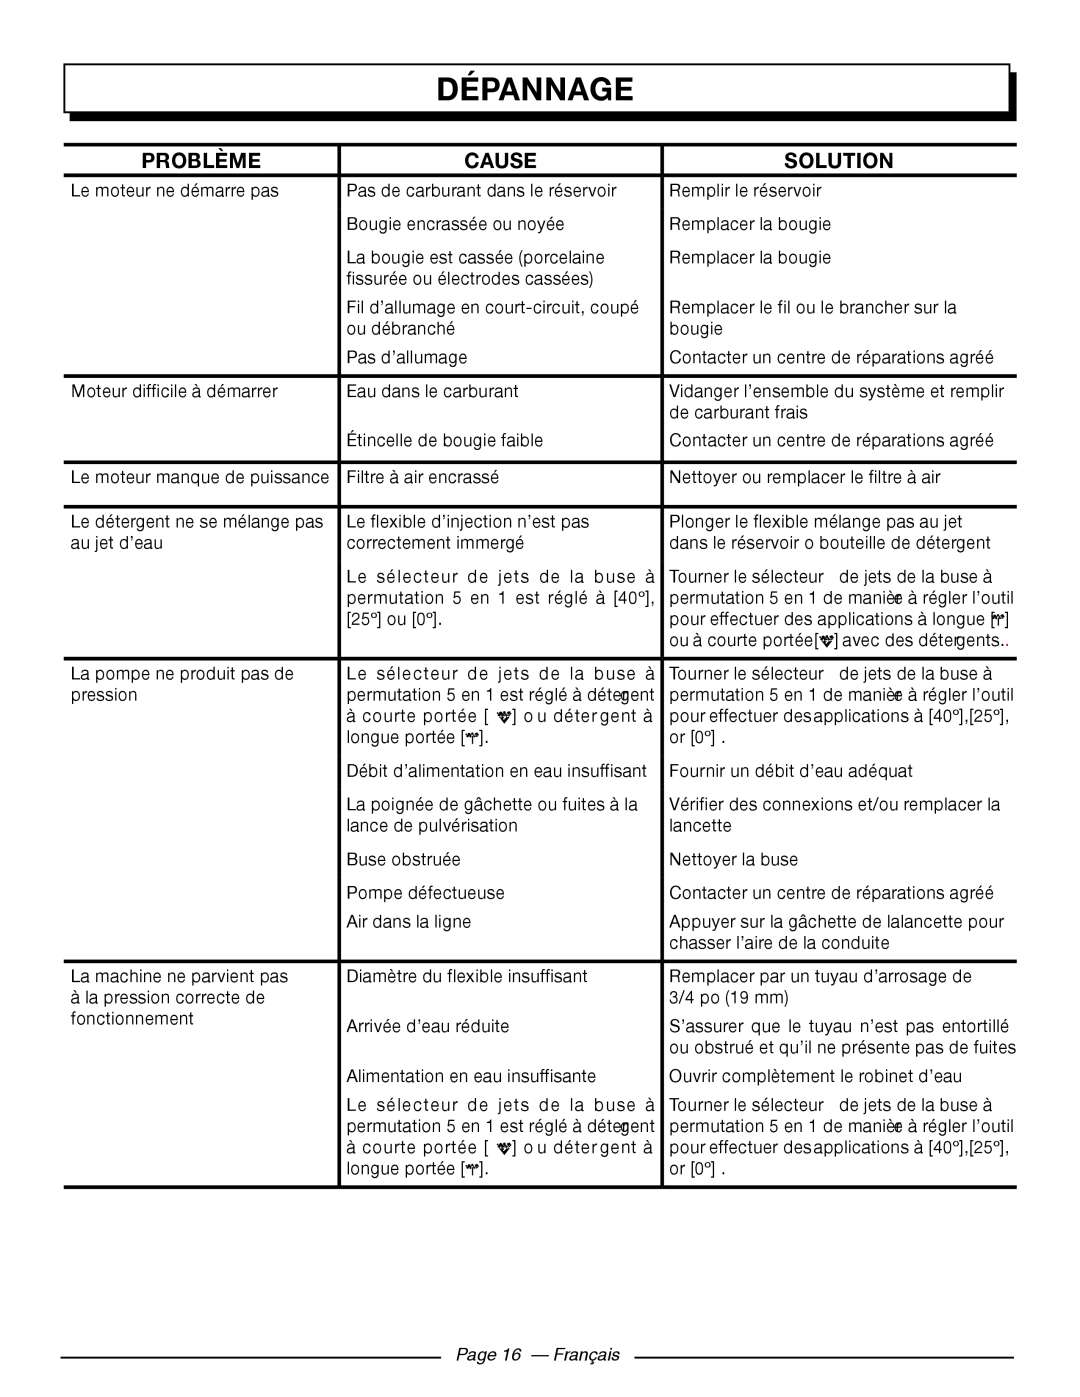 Homelite UT80709, UT80911 manuel dutilisation Dépannage, Problème, Cause, Solution, Page 16 - Français 